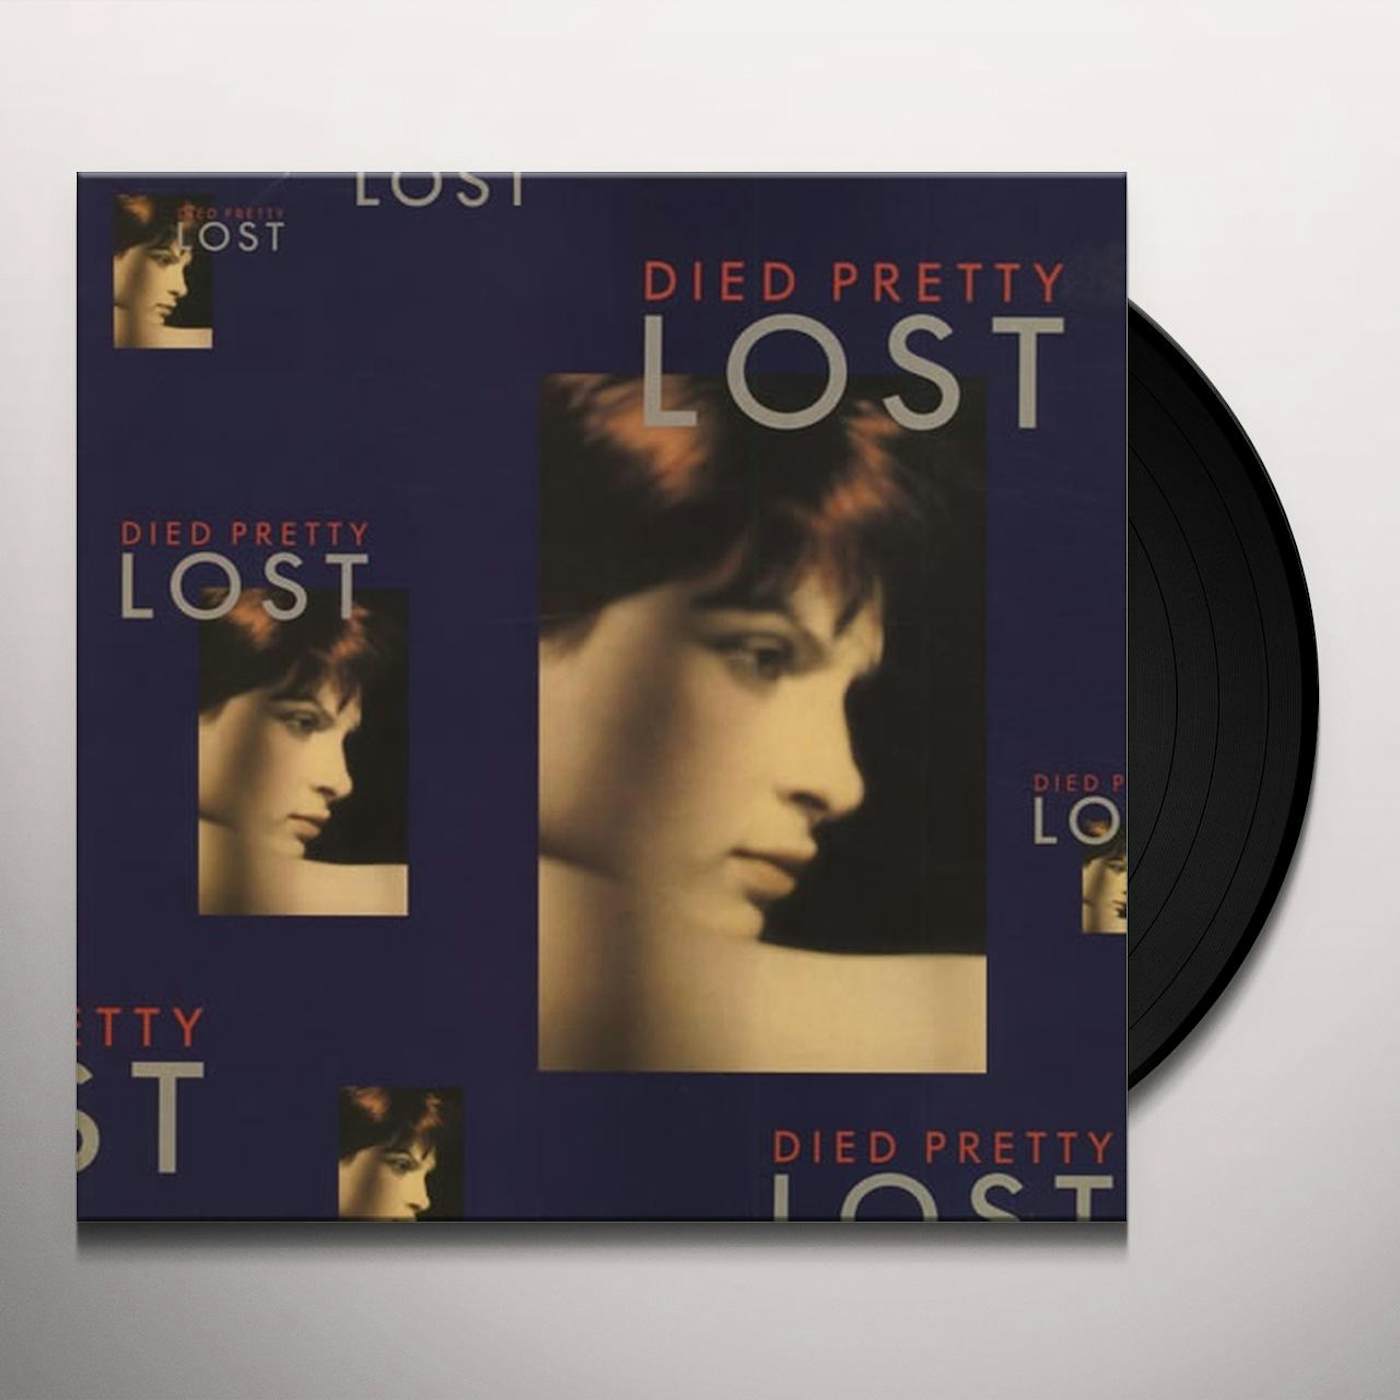 Died Pretty Lost Vinyl Record